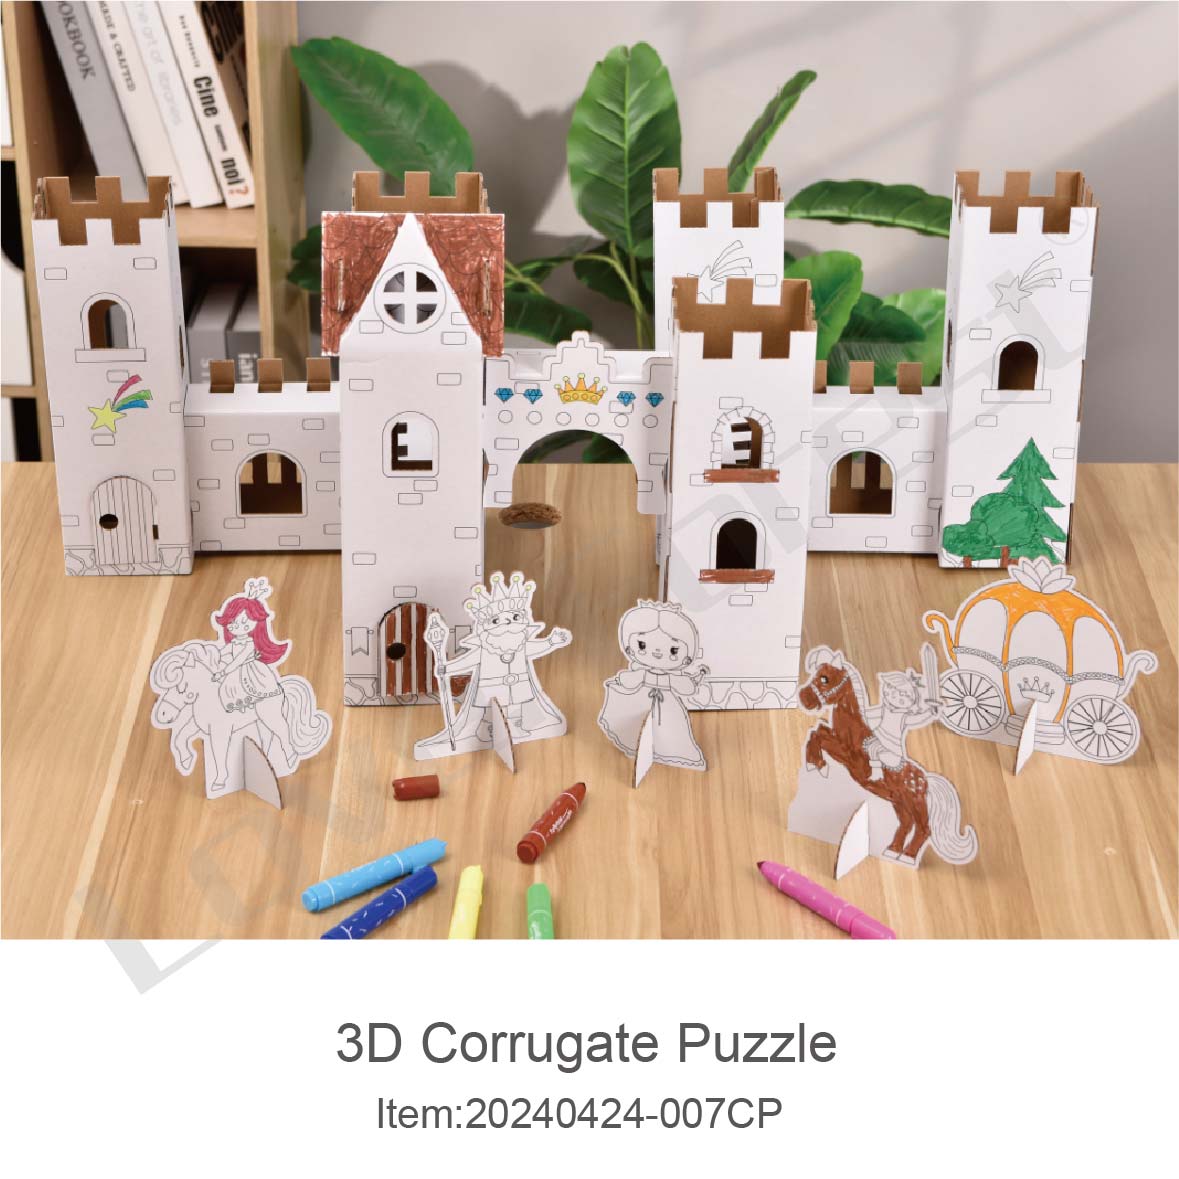 3D Corrugate Puzzle